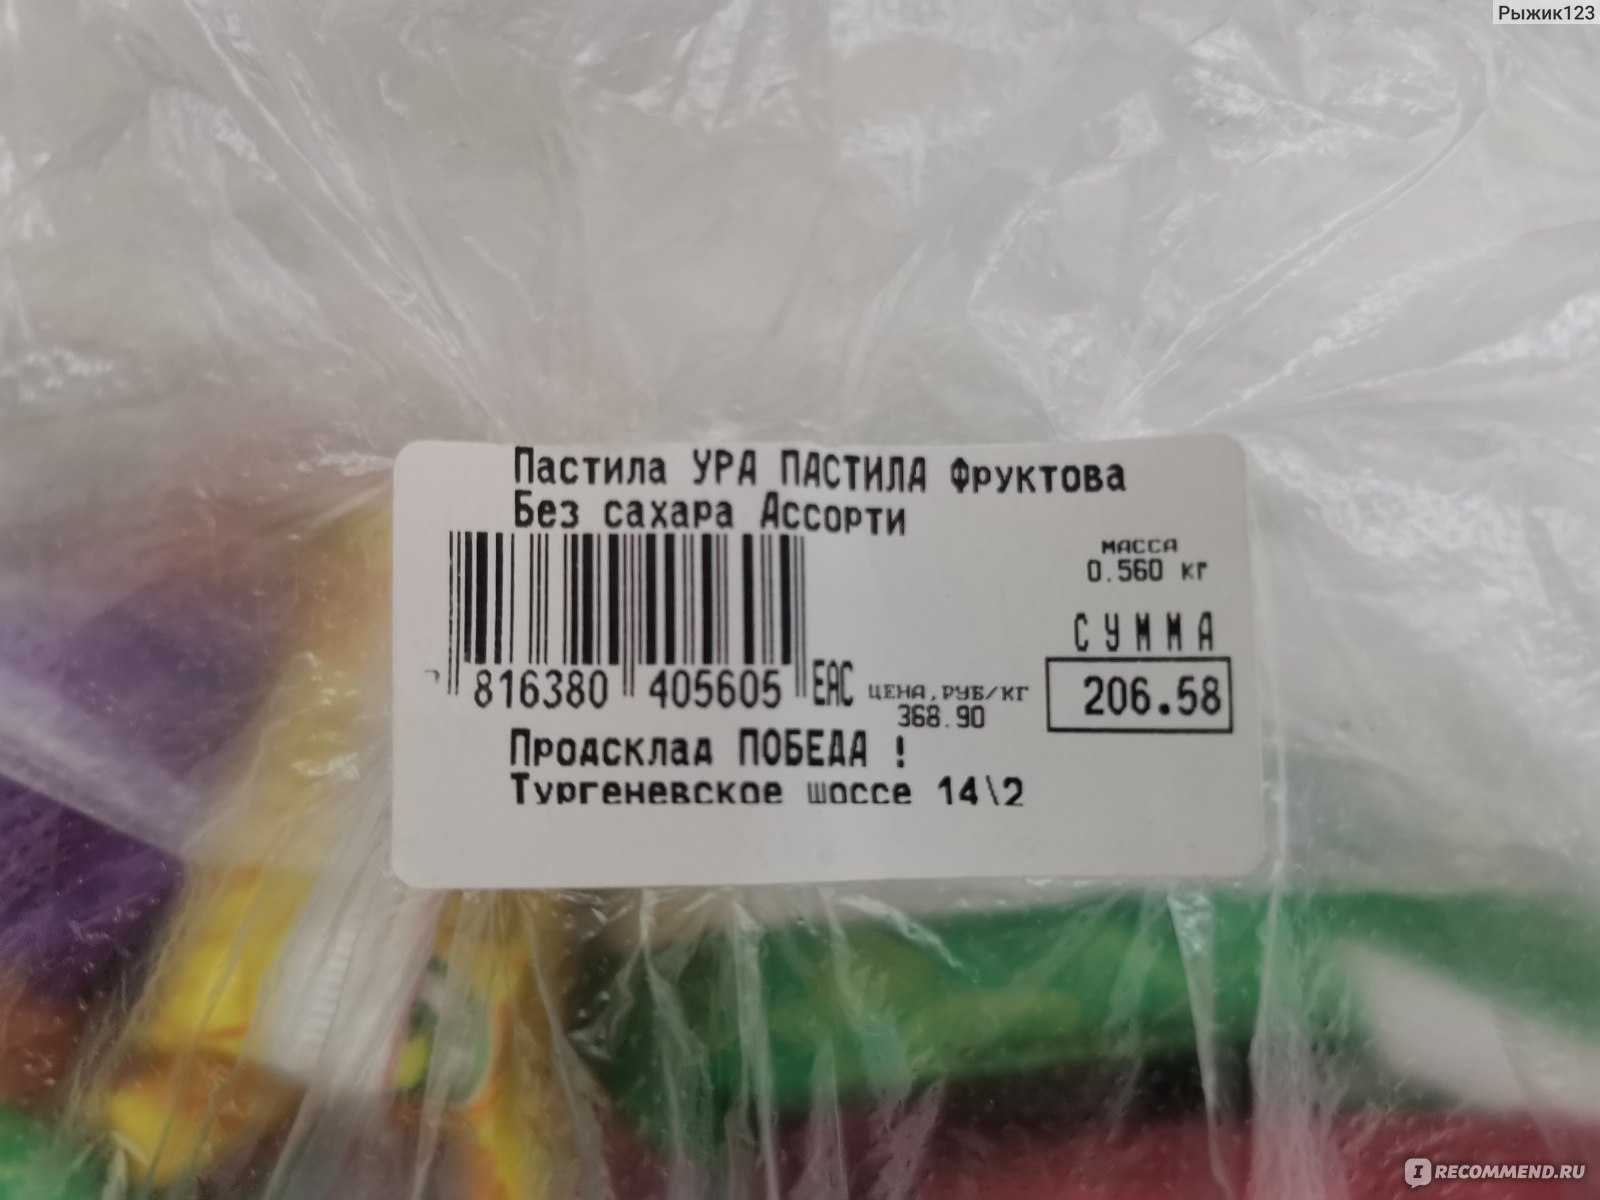 368 рублей за килограмм 